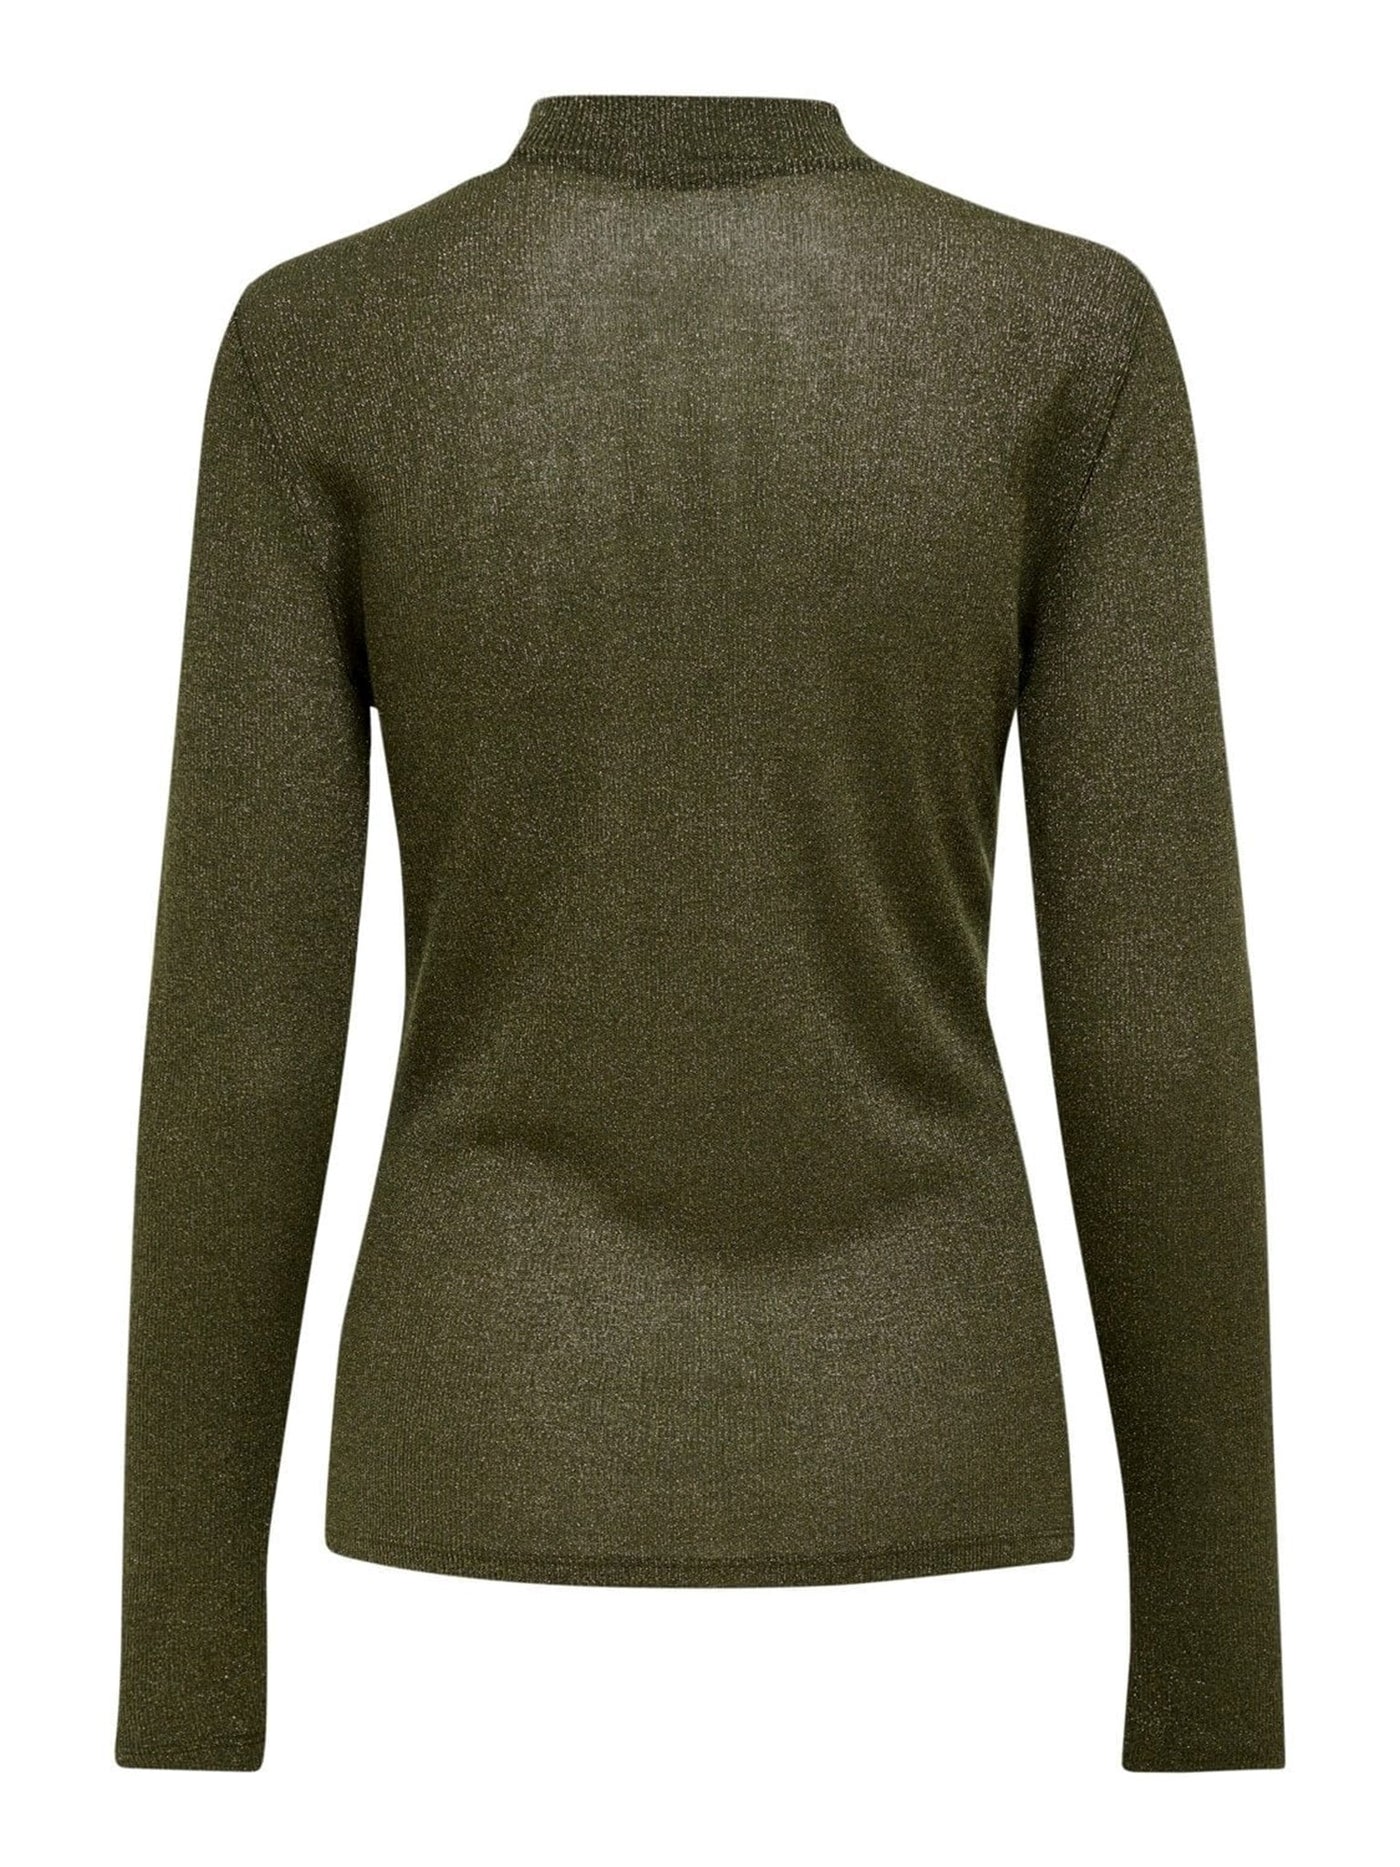 Langermet genser med lurex detaljer - Ivy green - ONLY - Grønn 3